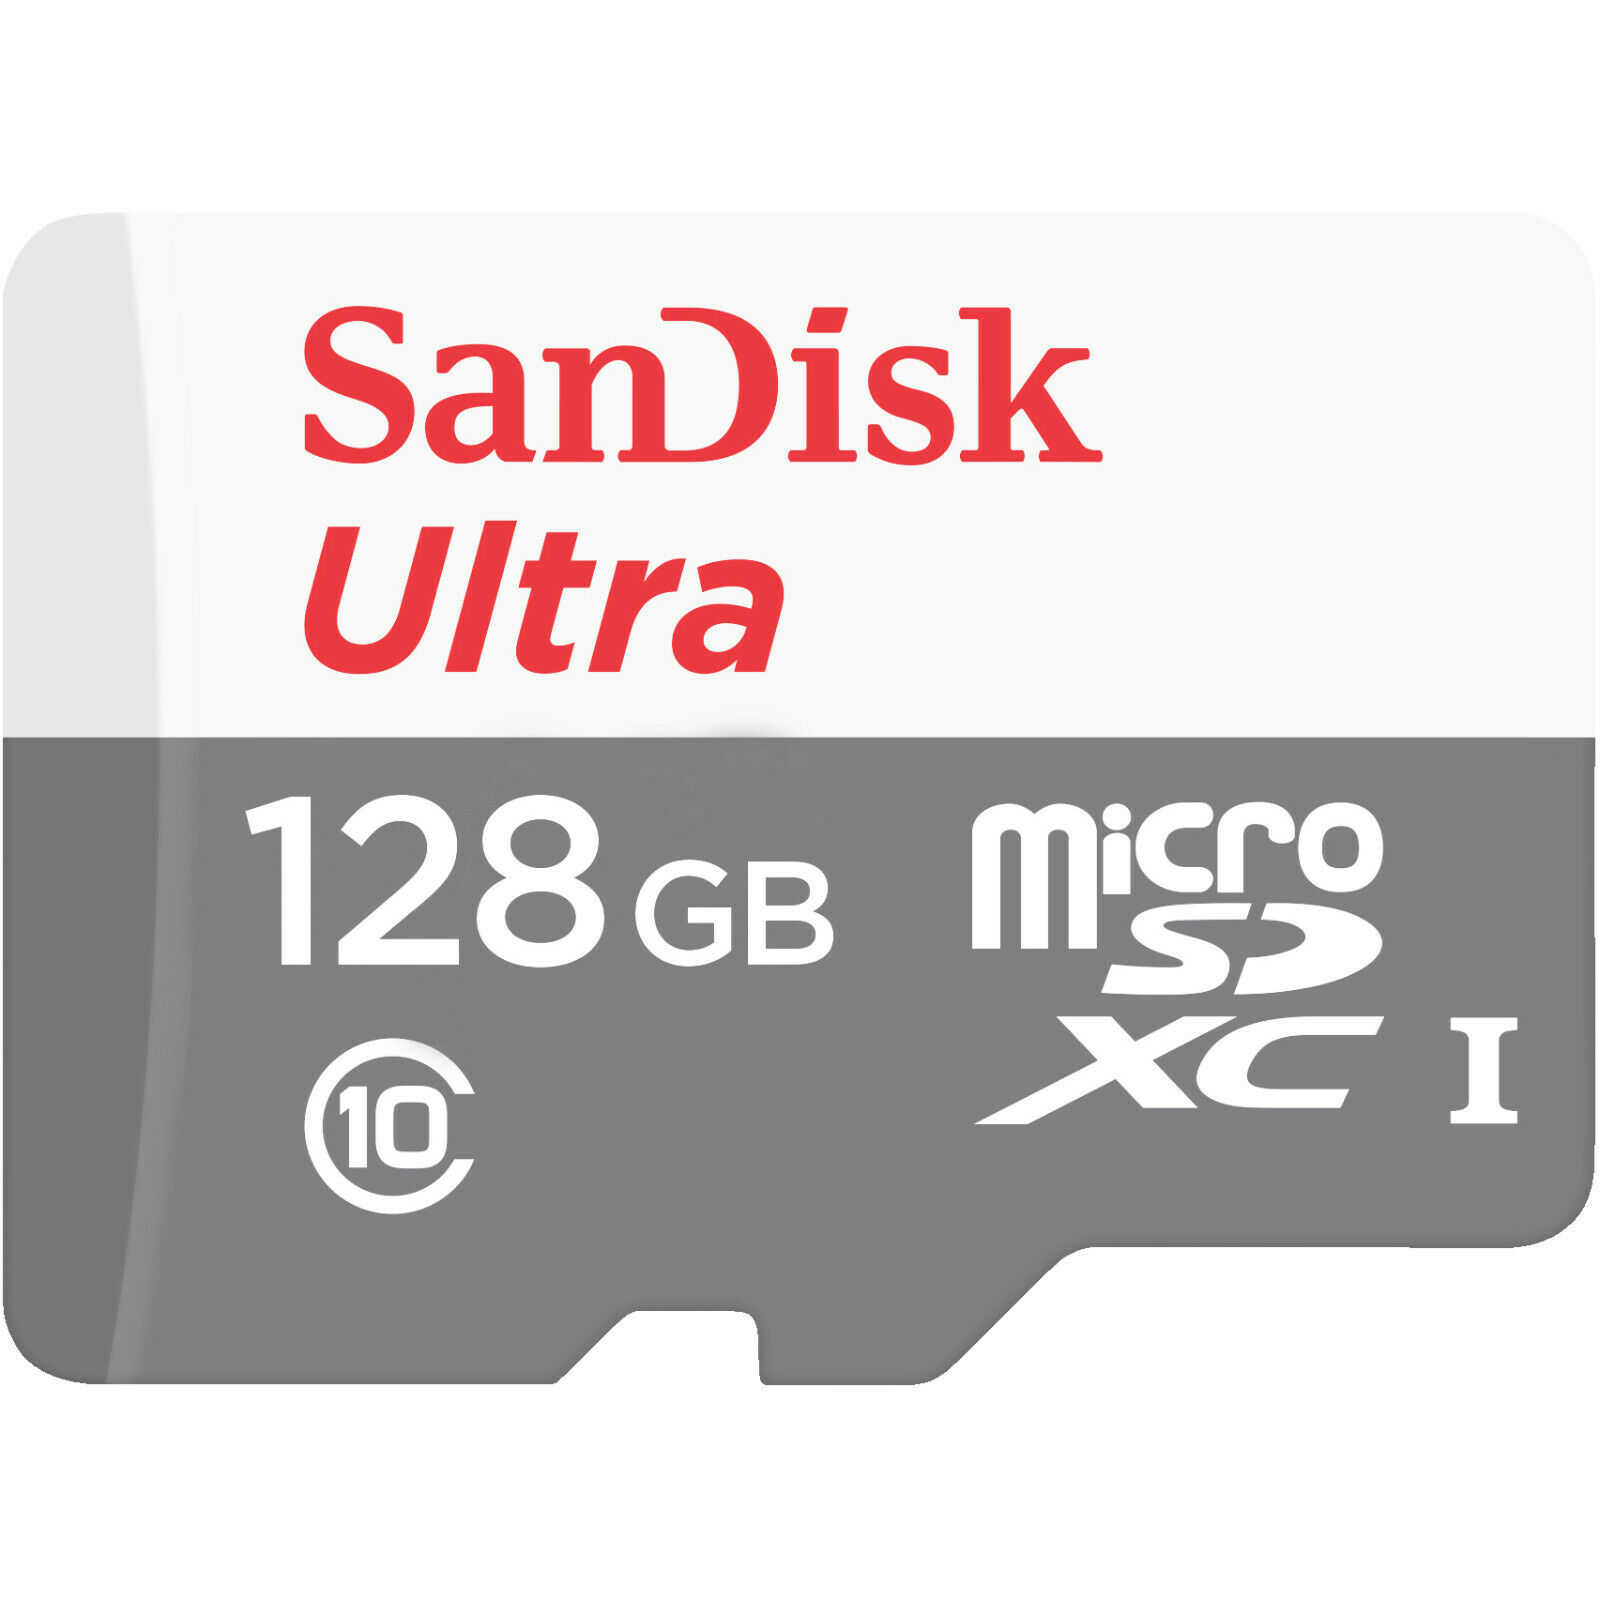 Bild zu SanDisk Ultra microSDXC Speicherkarte 128GB für 16€ (Vergleich: 23,99€)